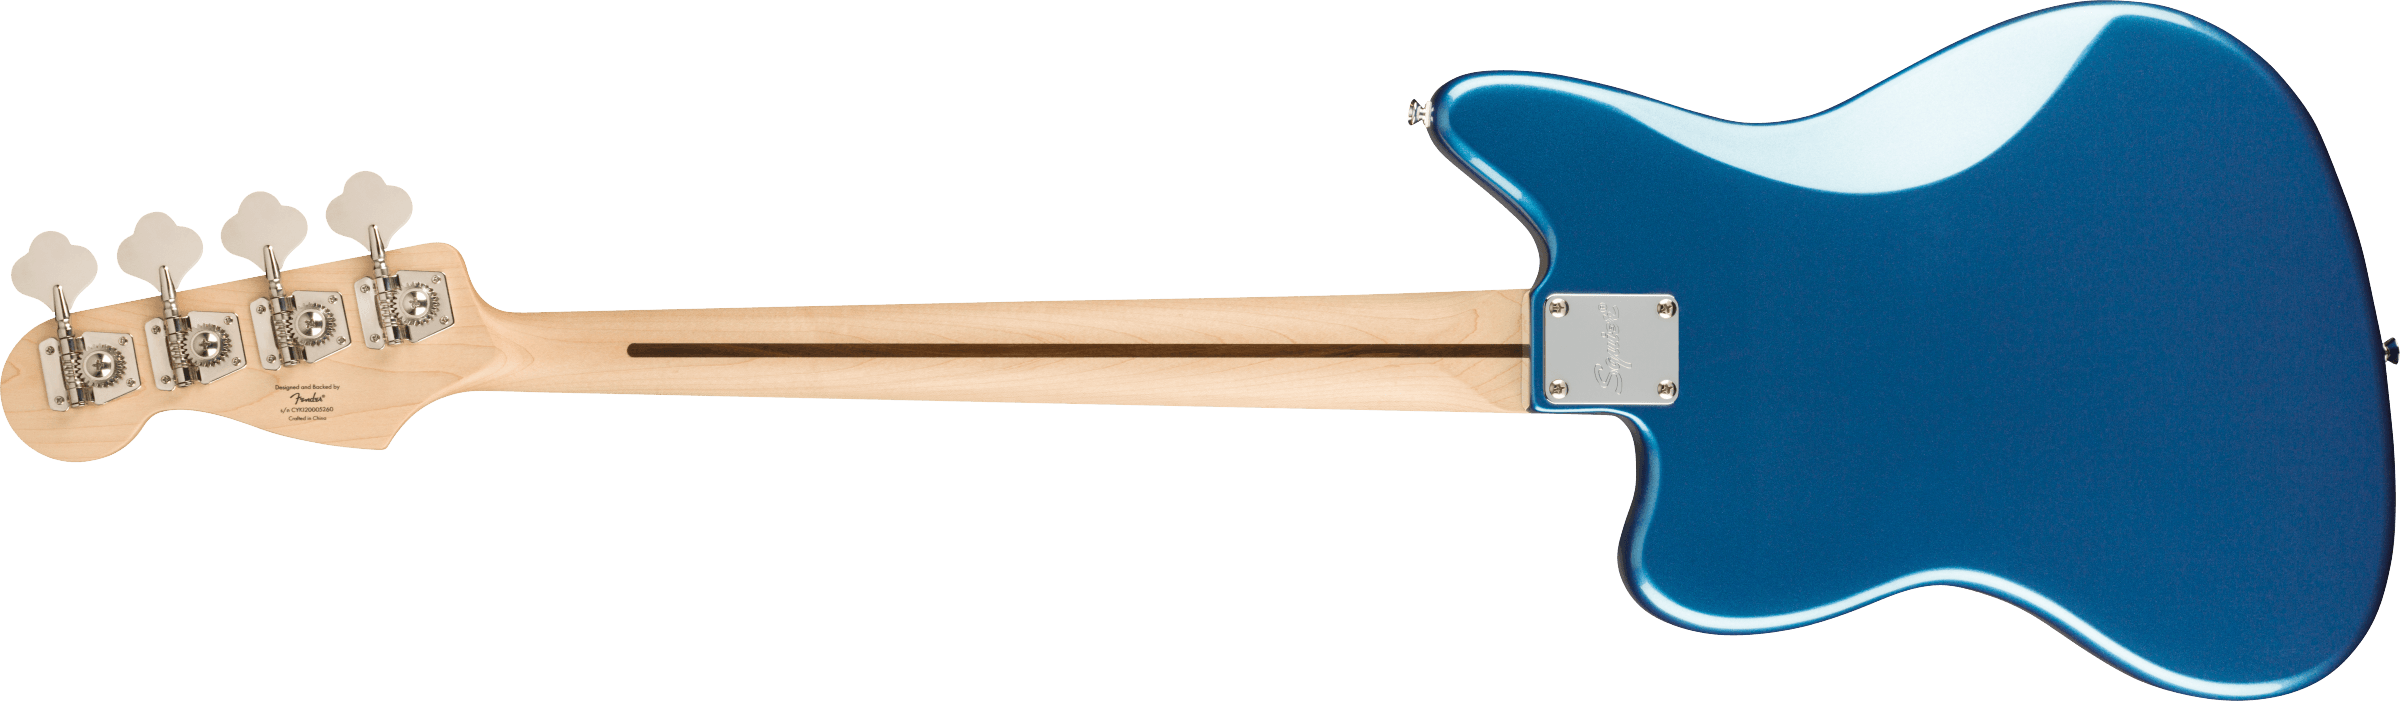 Squier Jaguar Bass Affinity 2021 Mn - Lake Placid Blue - Bajo eléctrico de cuerpo sólido - Variation 1